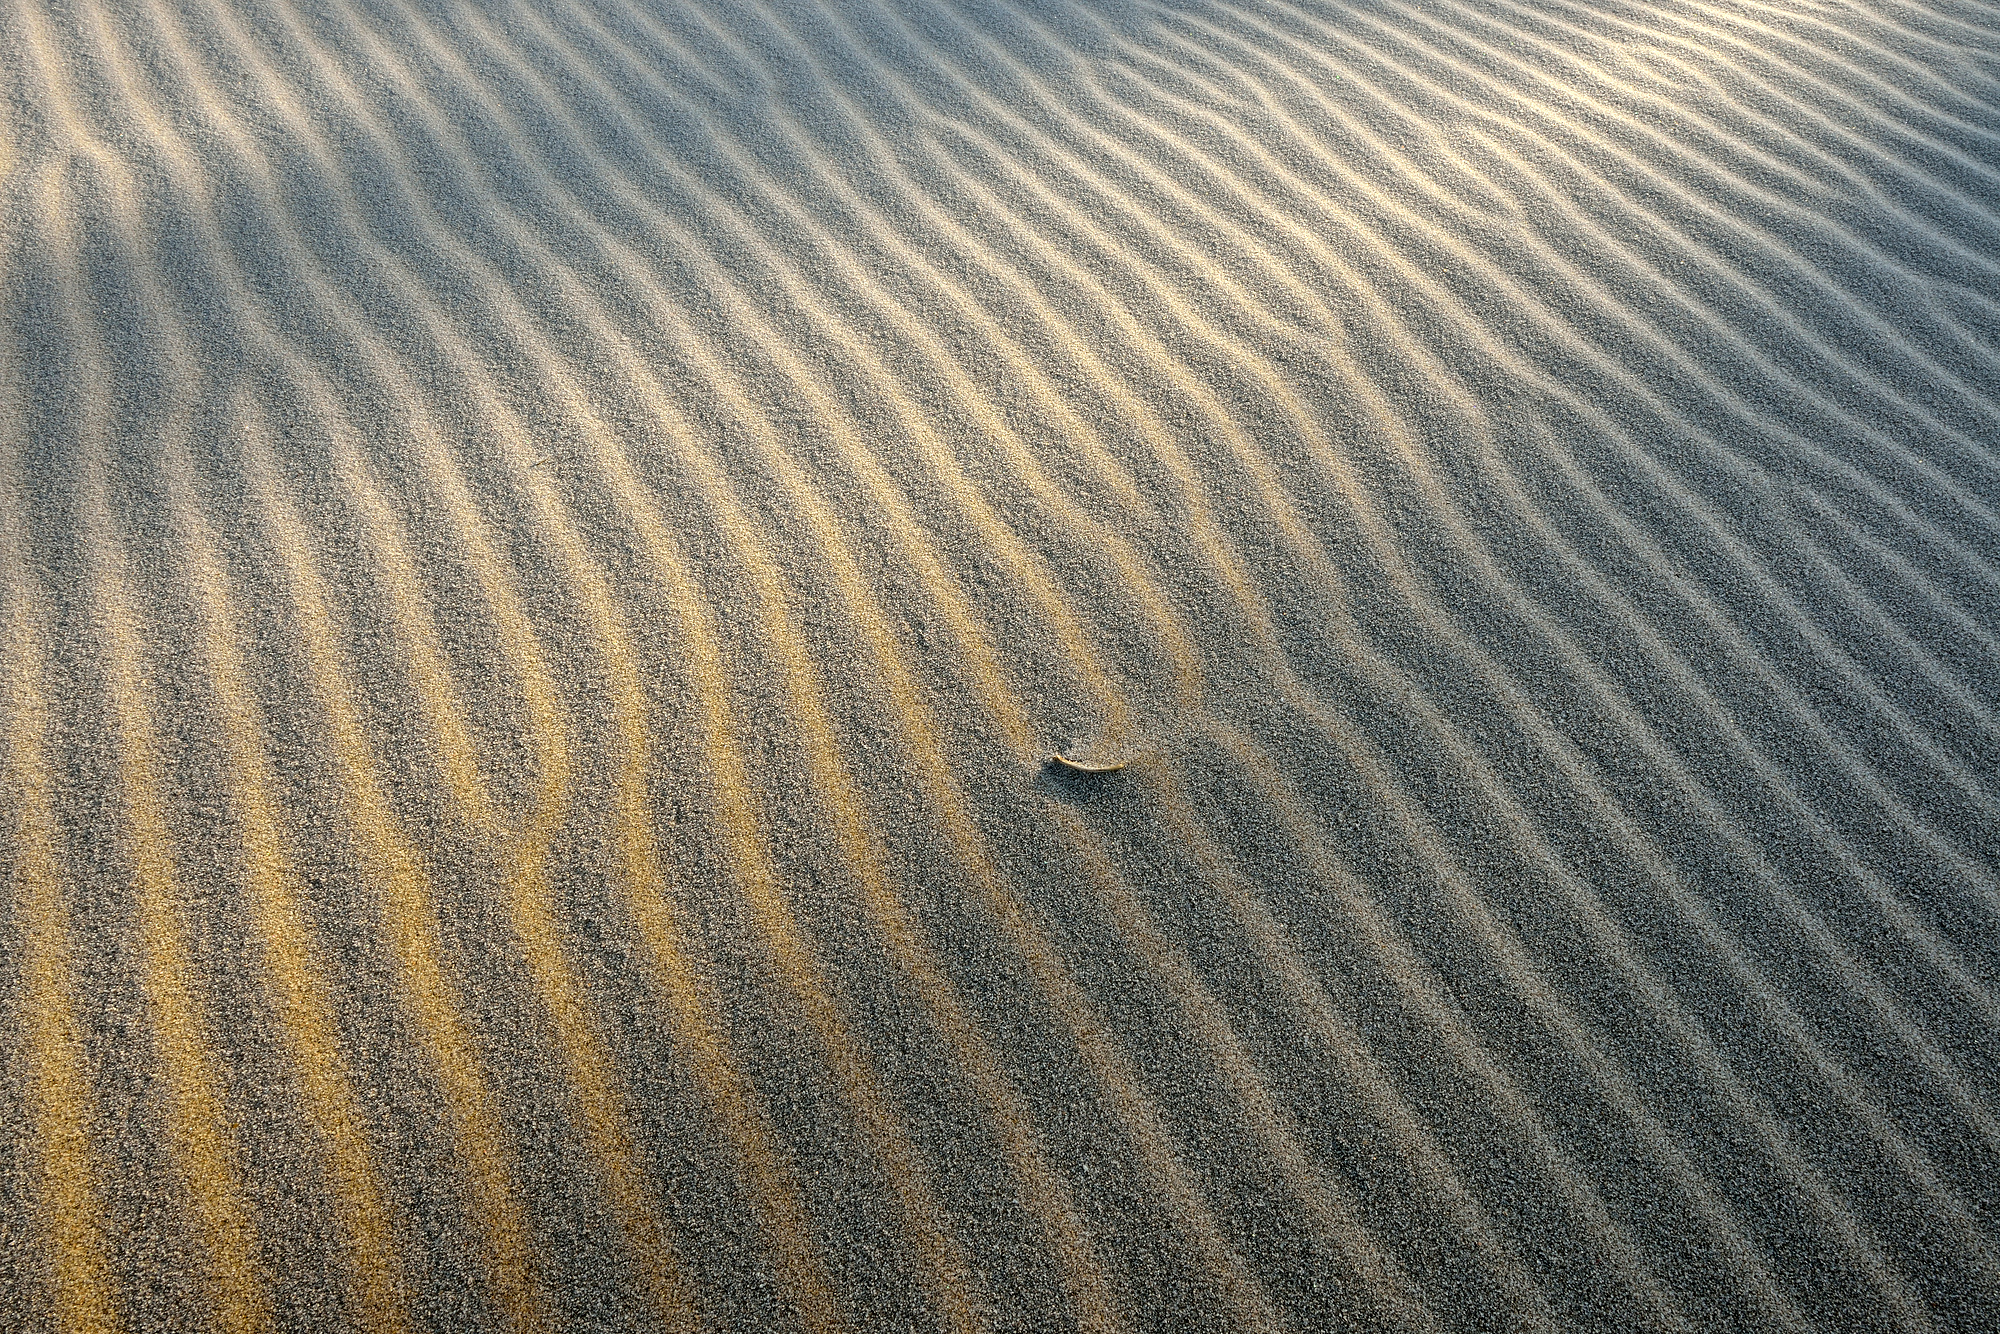 Licht van zonsopkomst schijnt over de grillige vormen van bevroren zandribbels aan de voet van de duinen op het strand van Heemskerk.